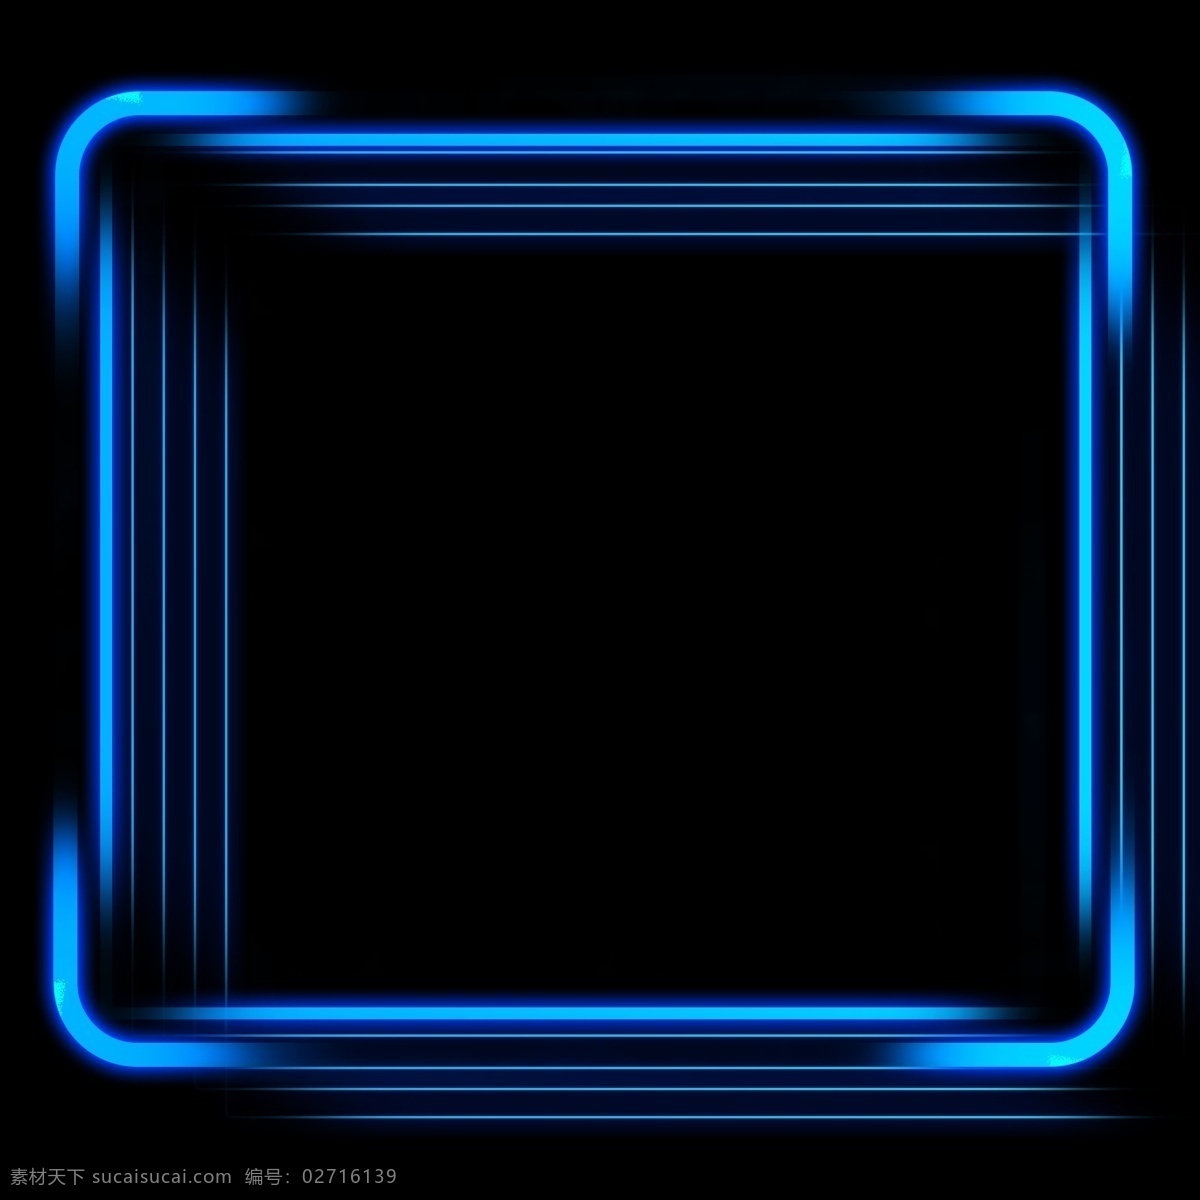 超 科技 感 发光 边框 科技感 发光边框 科技边框 边框素材 发光素材